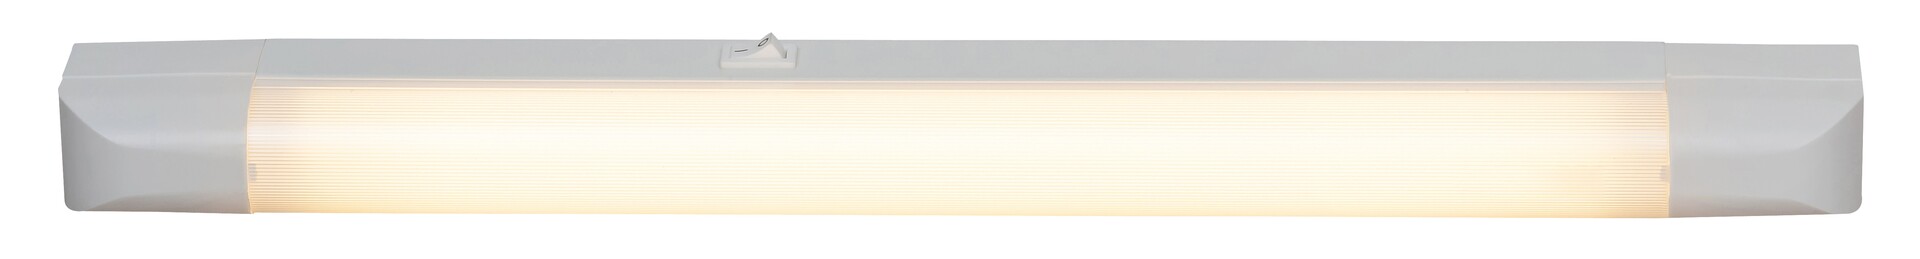 Arbeitsleuchte Band light 2302, G13, 15W, 2700K, 950lm, Metall, weiß, warmweiß, 50cm